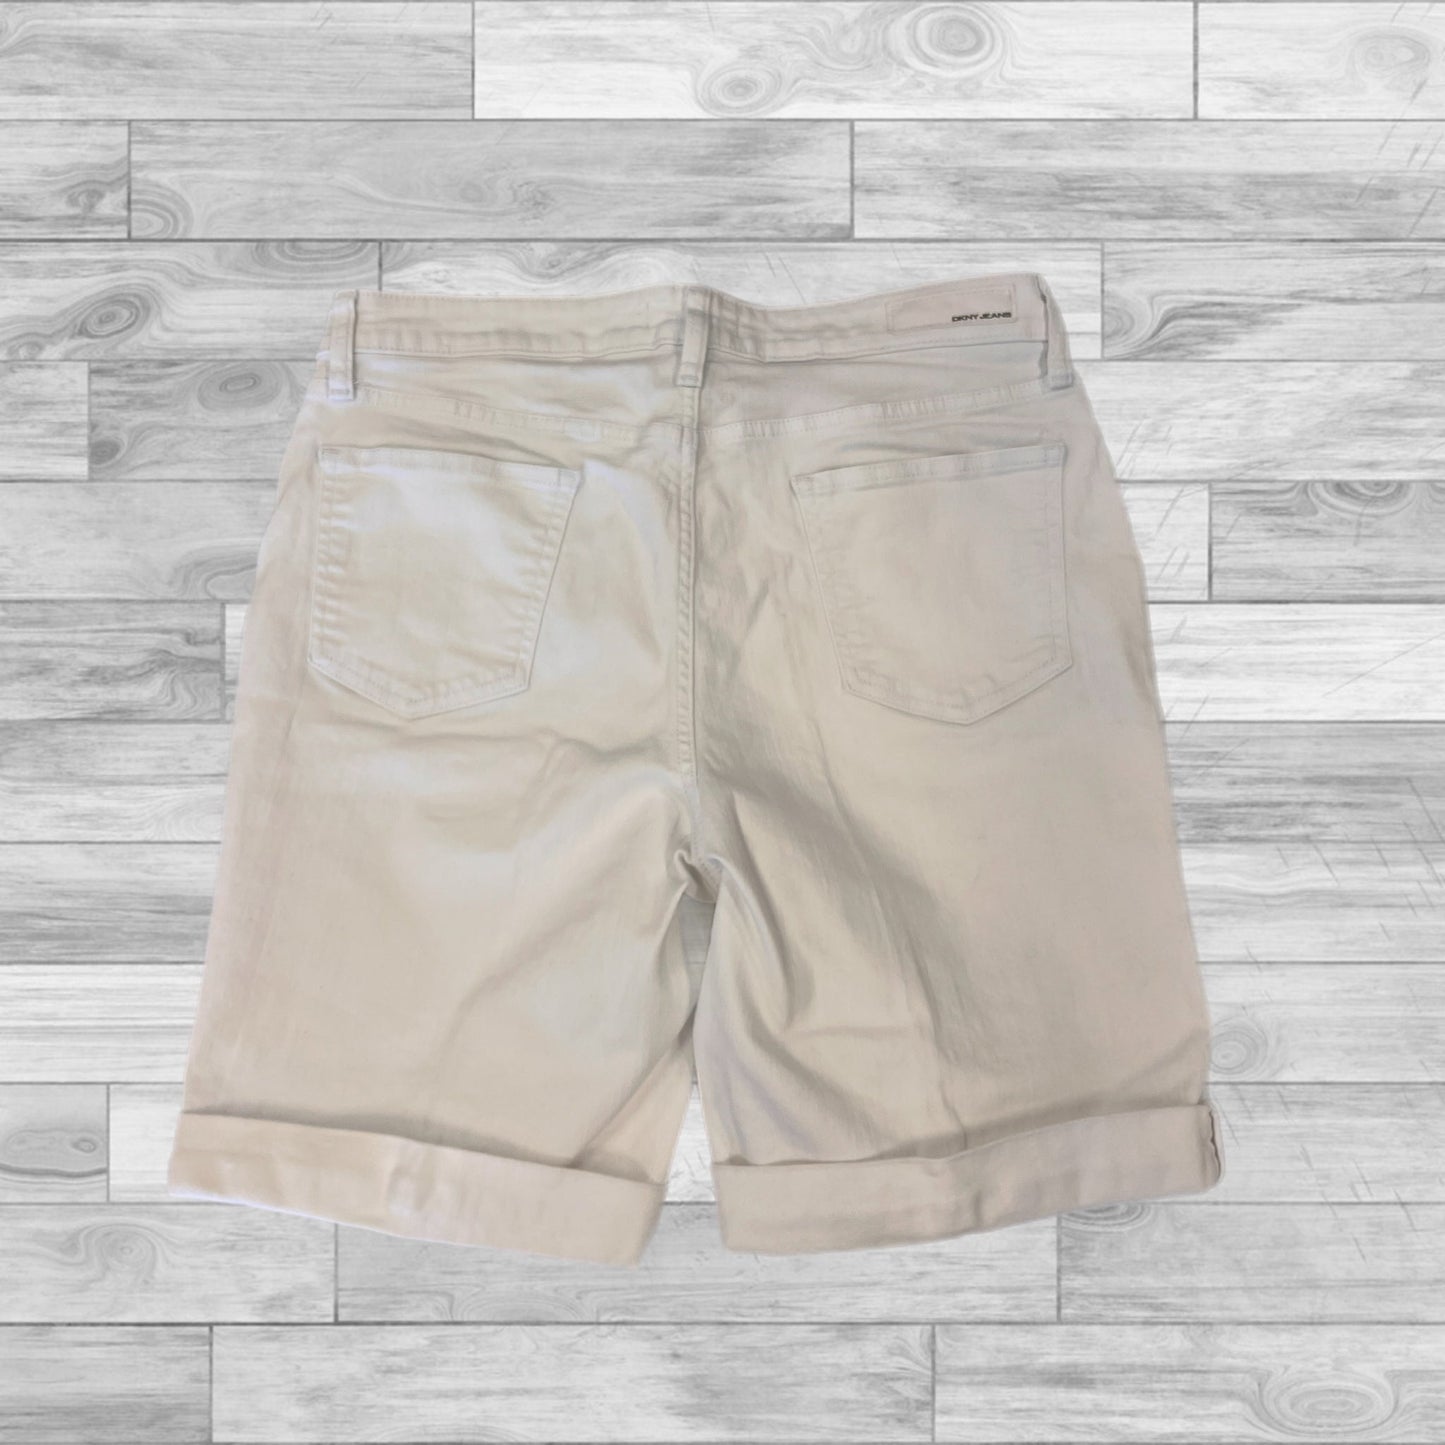 White Shorts Dkny, Size 14